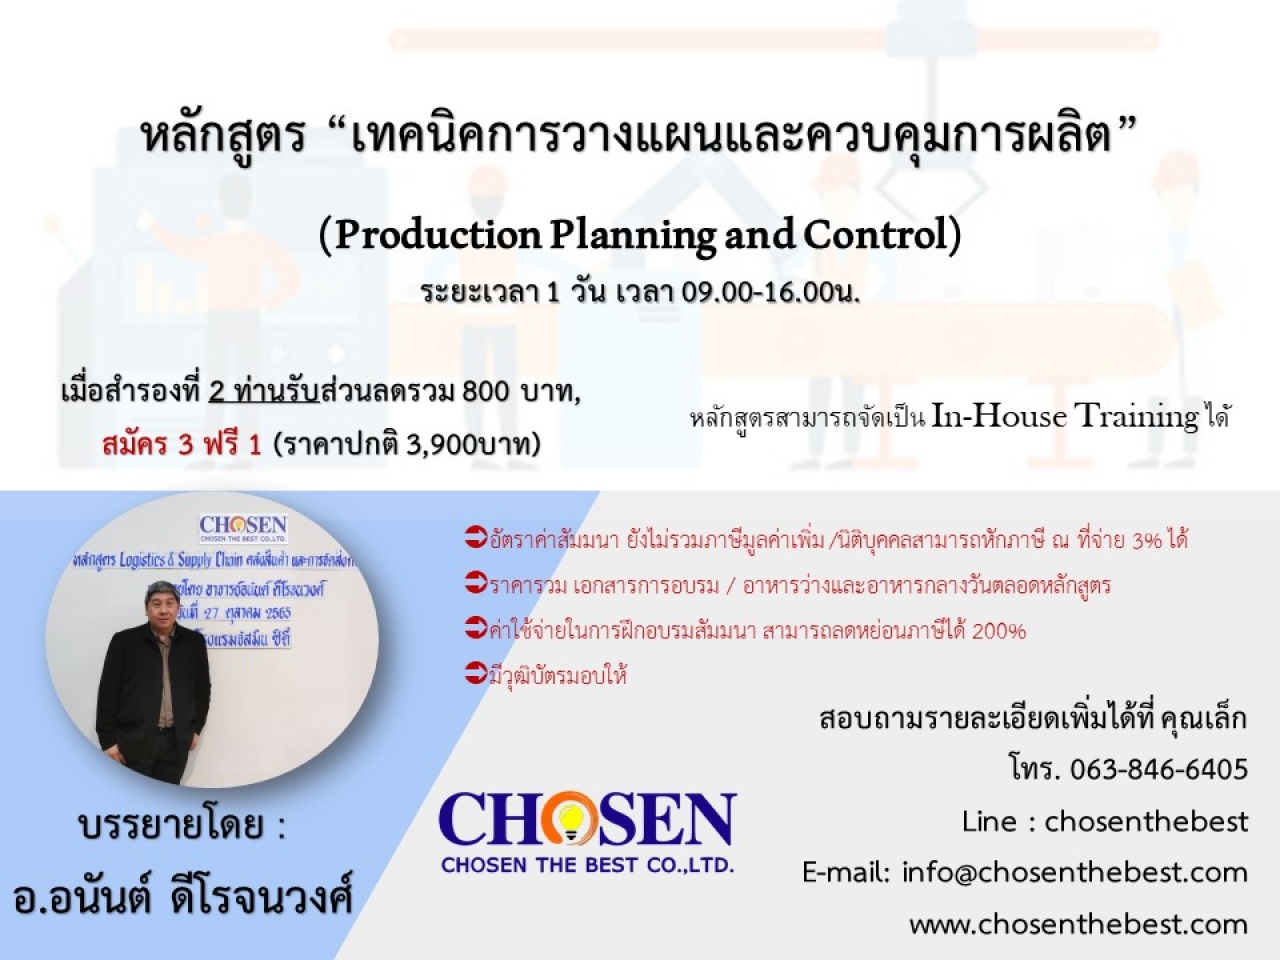 เทคนิคการวางแผนและควบคุมการผลิต ” (Production Planning and Control) 